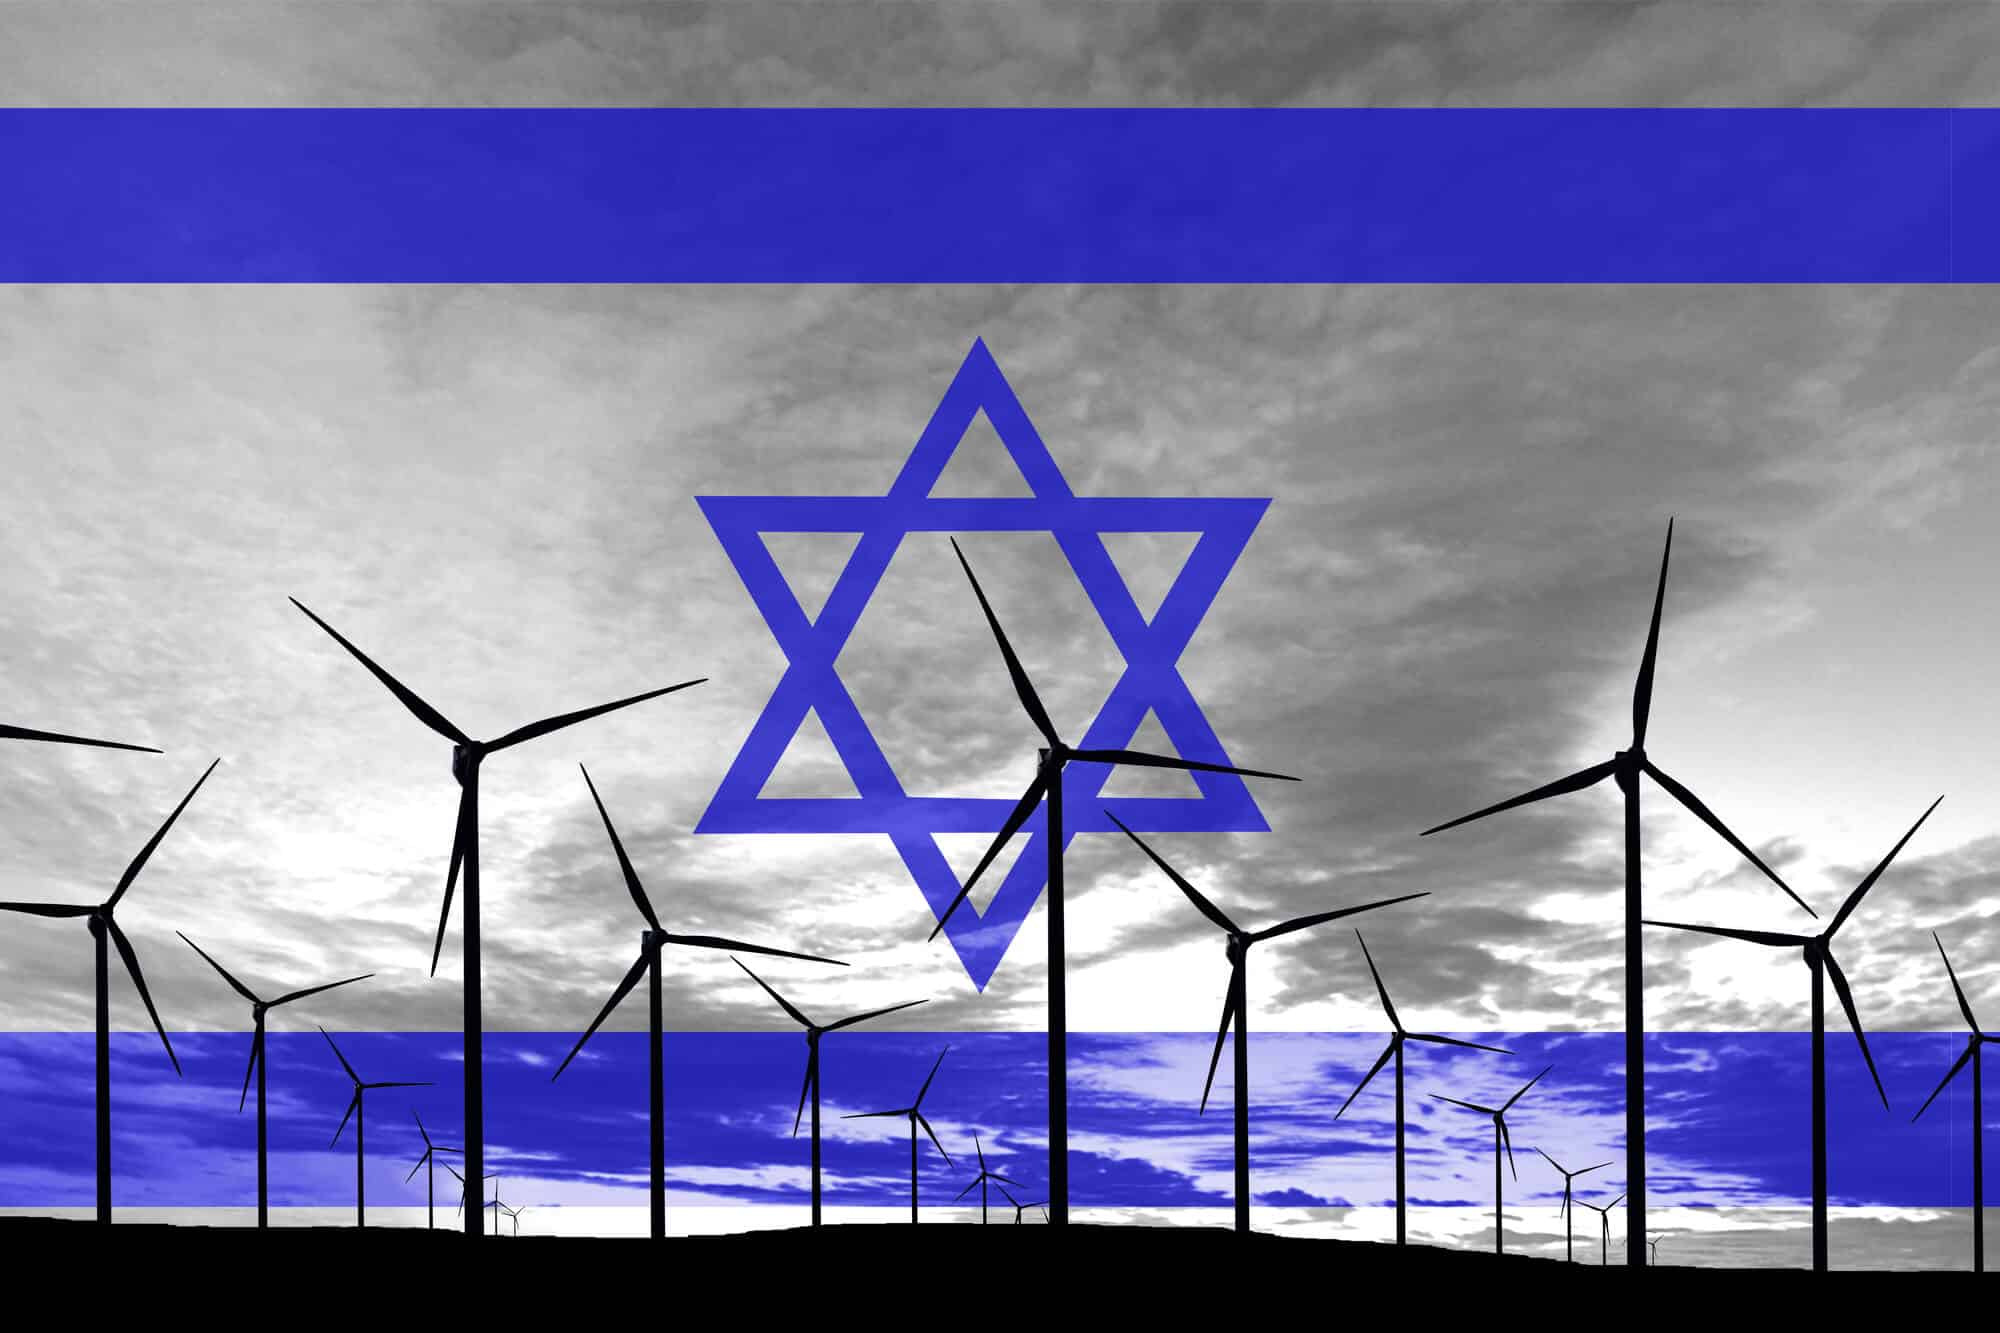 אי הערכות ישראל בבניית תשתית אנרגיה חלופית. <a href="https://depositphotos.com. ">המחשה: depositphotos.com</a>